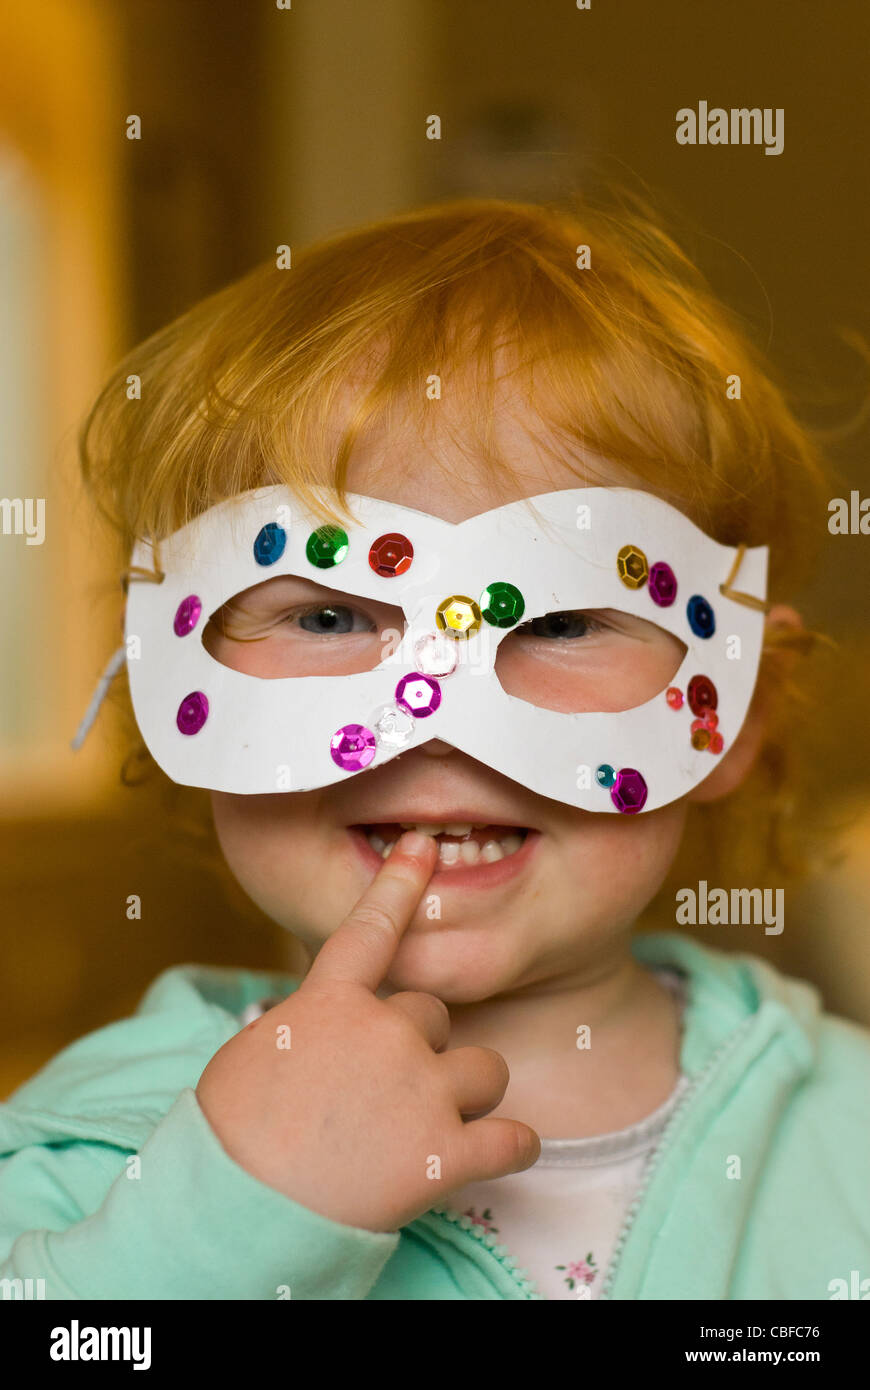 Kinder spielen - kleines Mädchen mit einer hausgemachten Maske Stockfoto